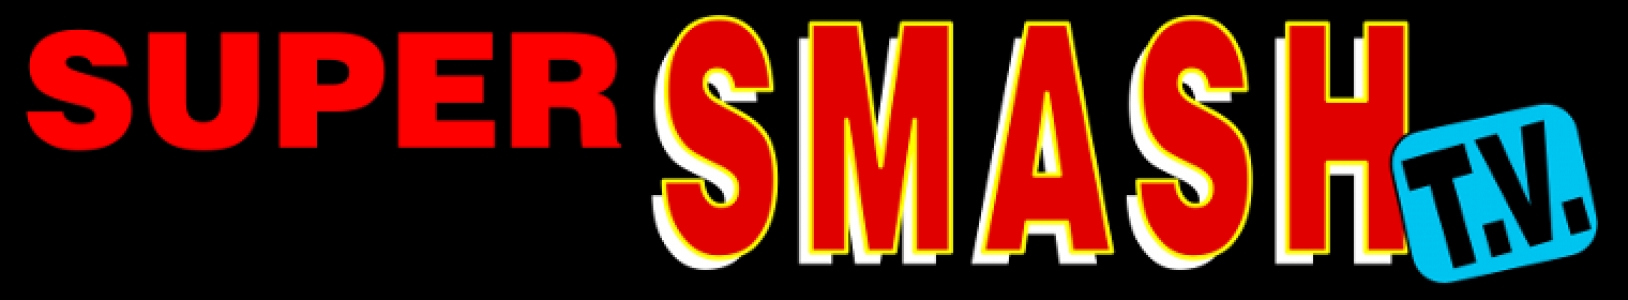 Super Smash T.V. banner